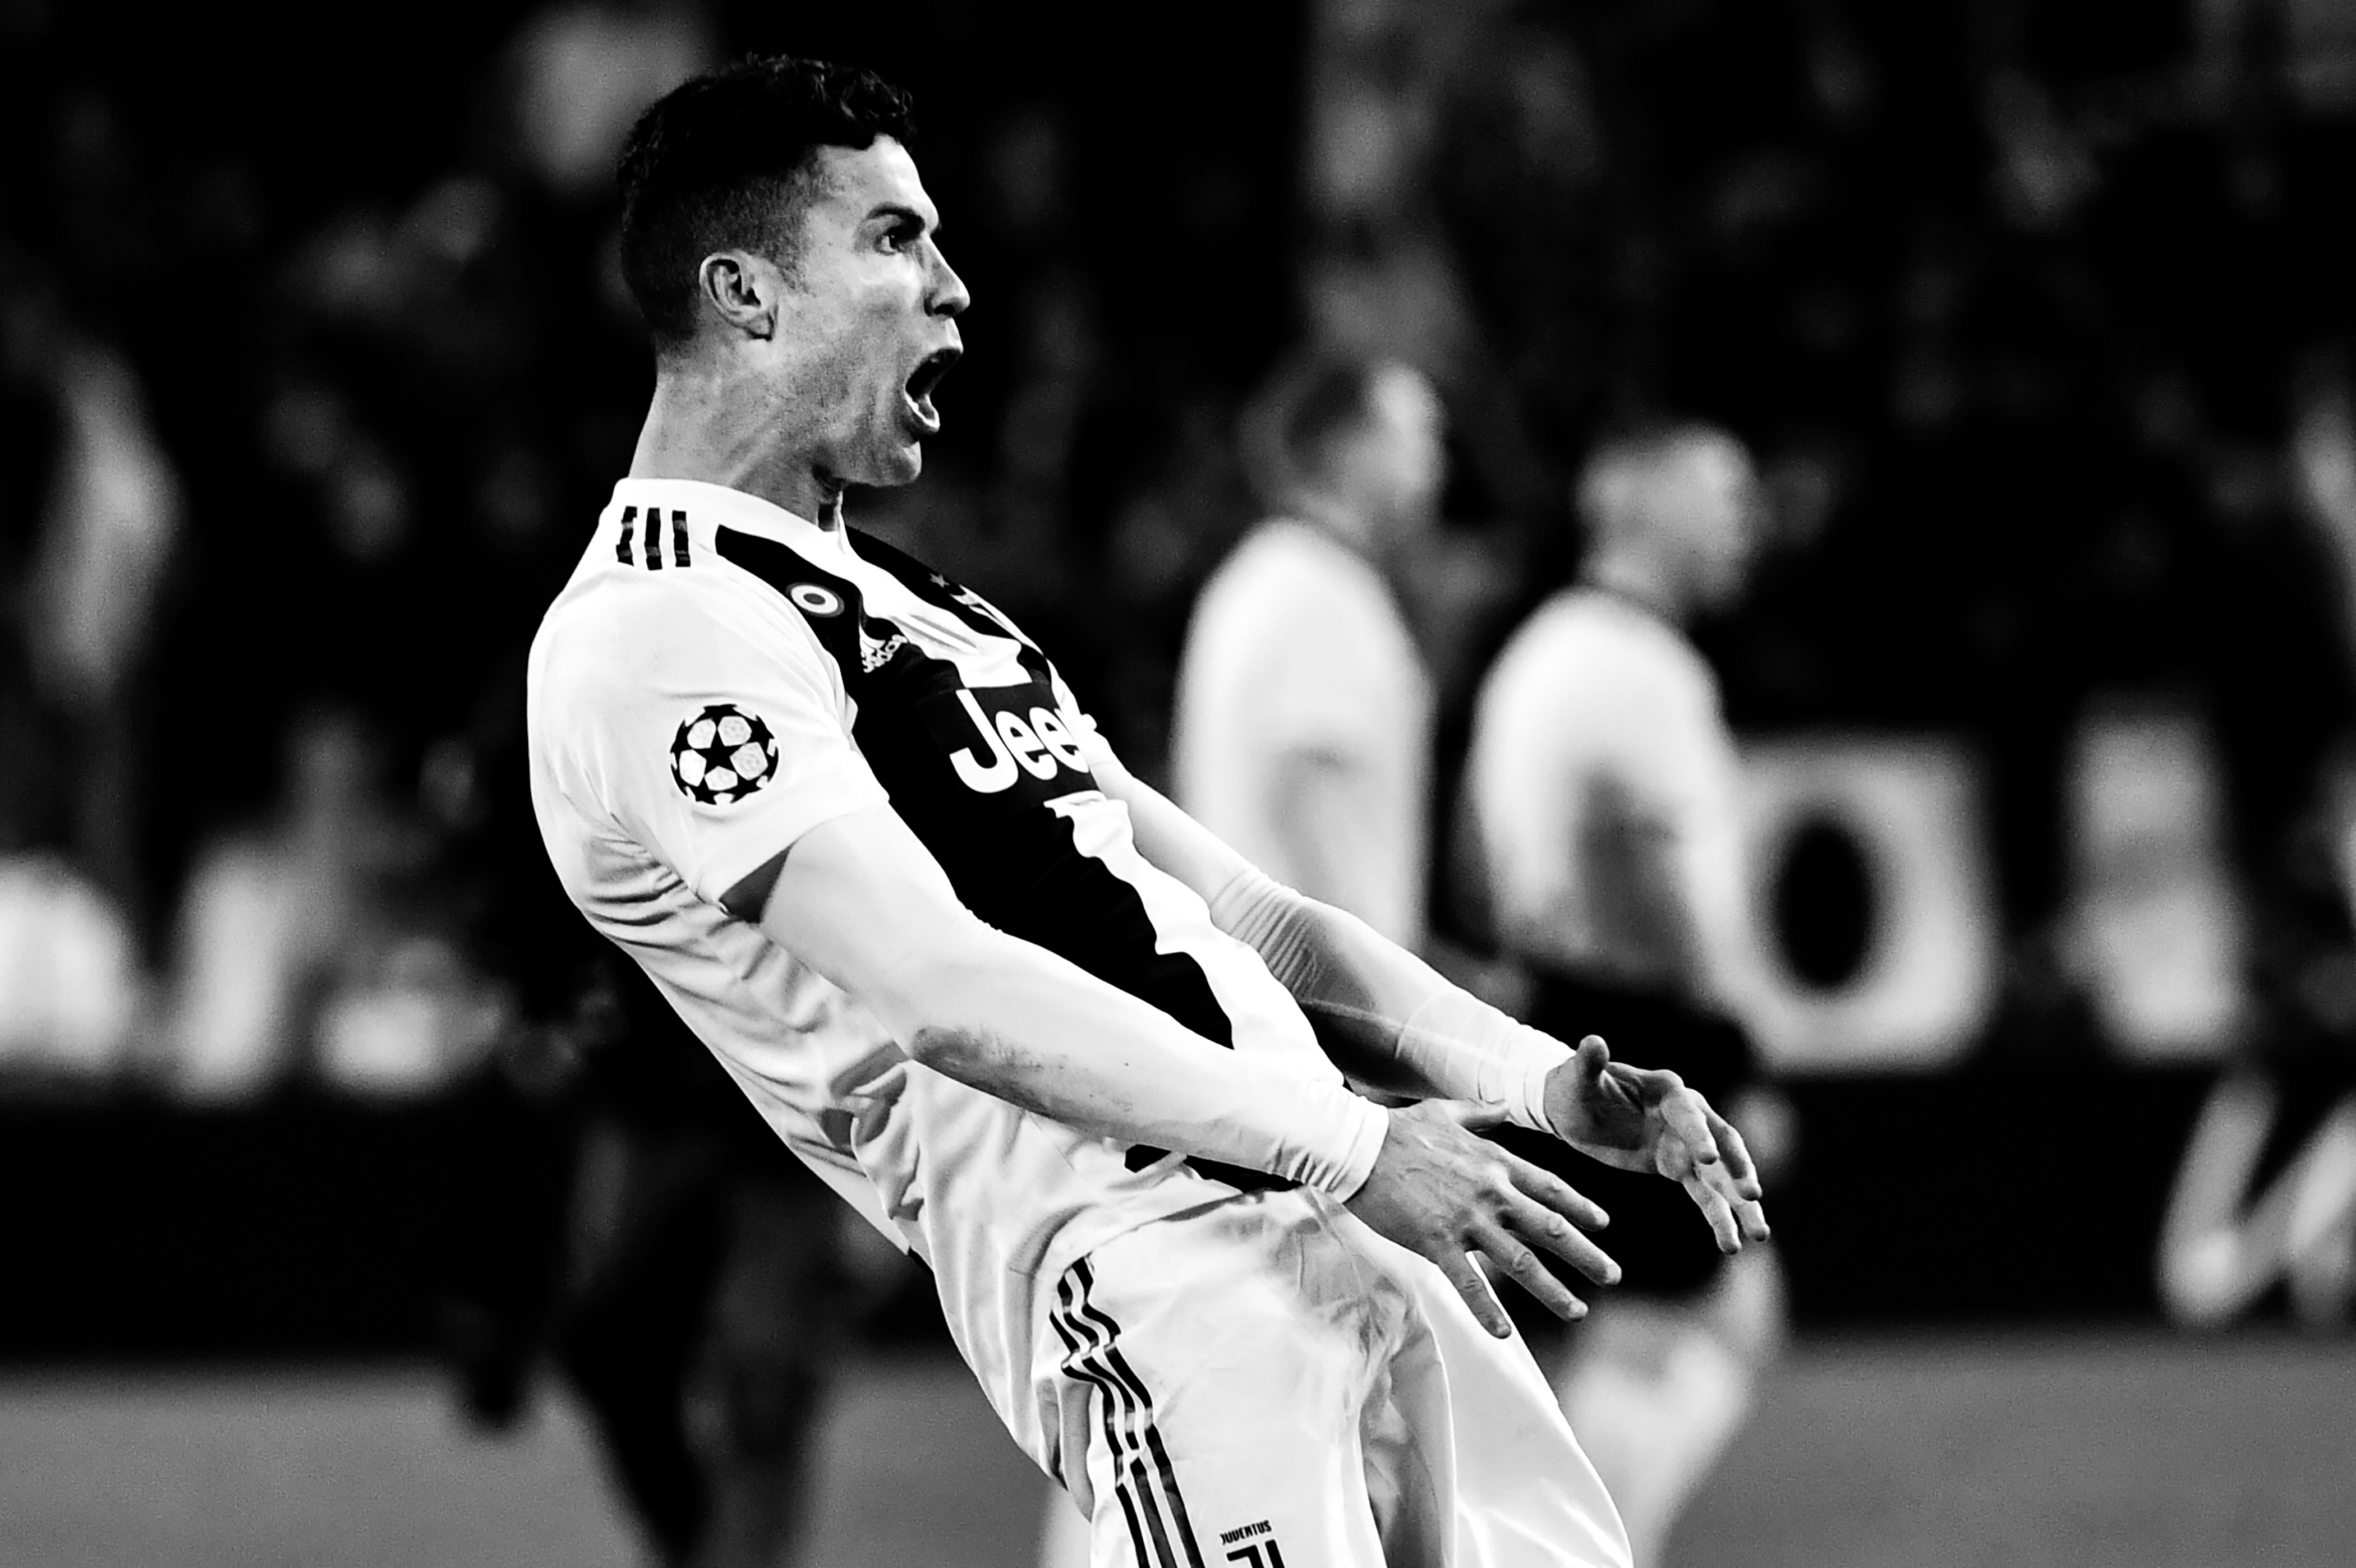 Cristiano Ronaldo se encuentra bajo investigación por este gesto en la victoria del Real Madrid, 3-0 contra el Atlético de Madrid en la vuelta de los octavos de final de la Champions League. (Foto Prensa Libre: AFP)